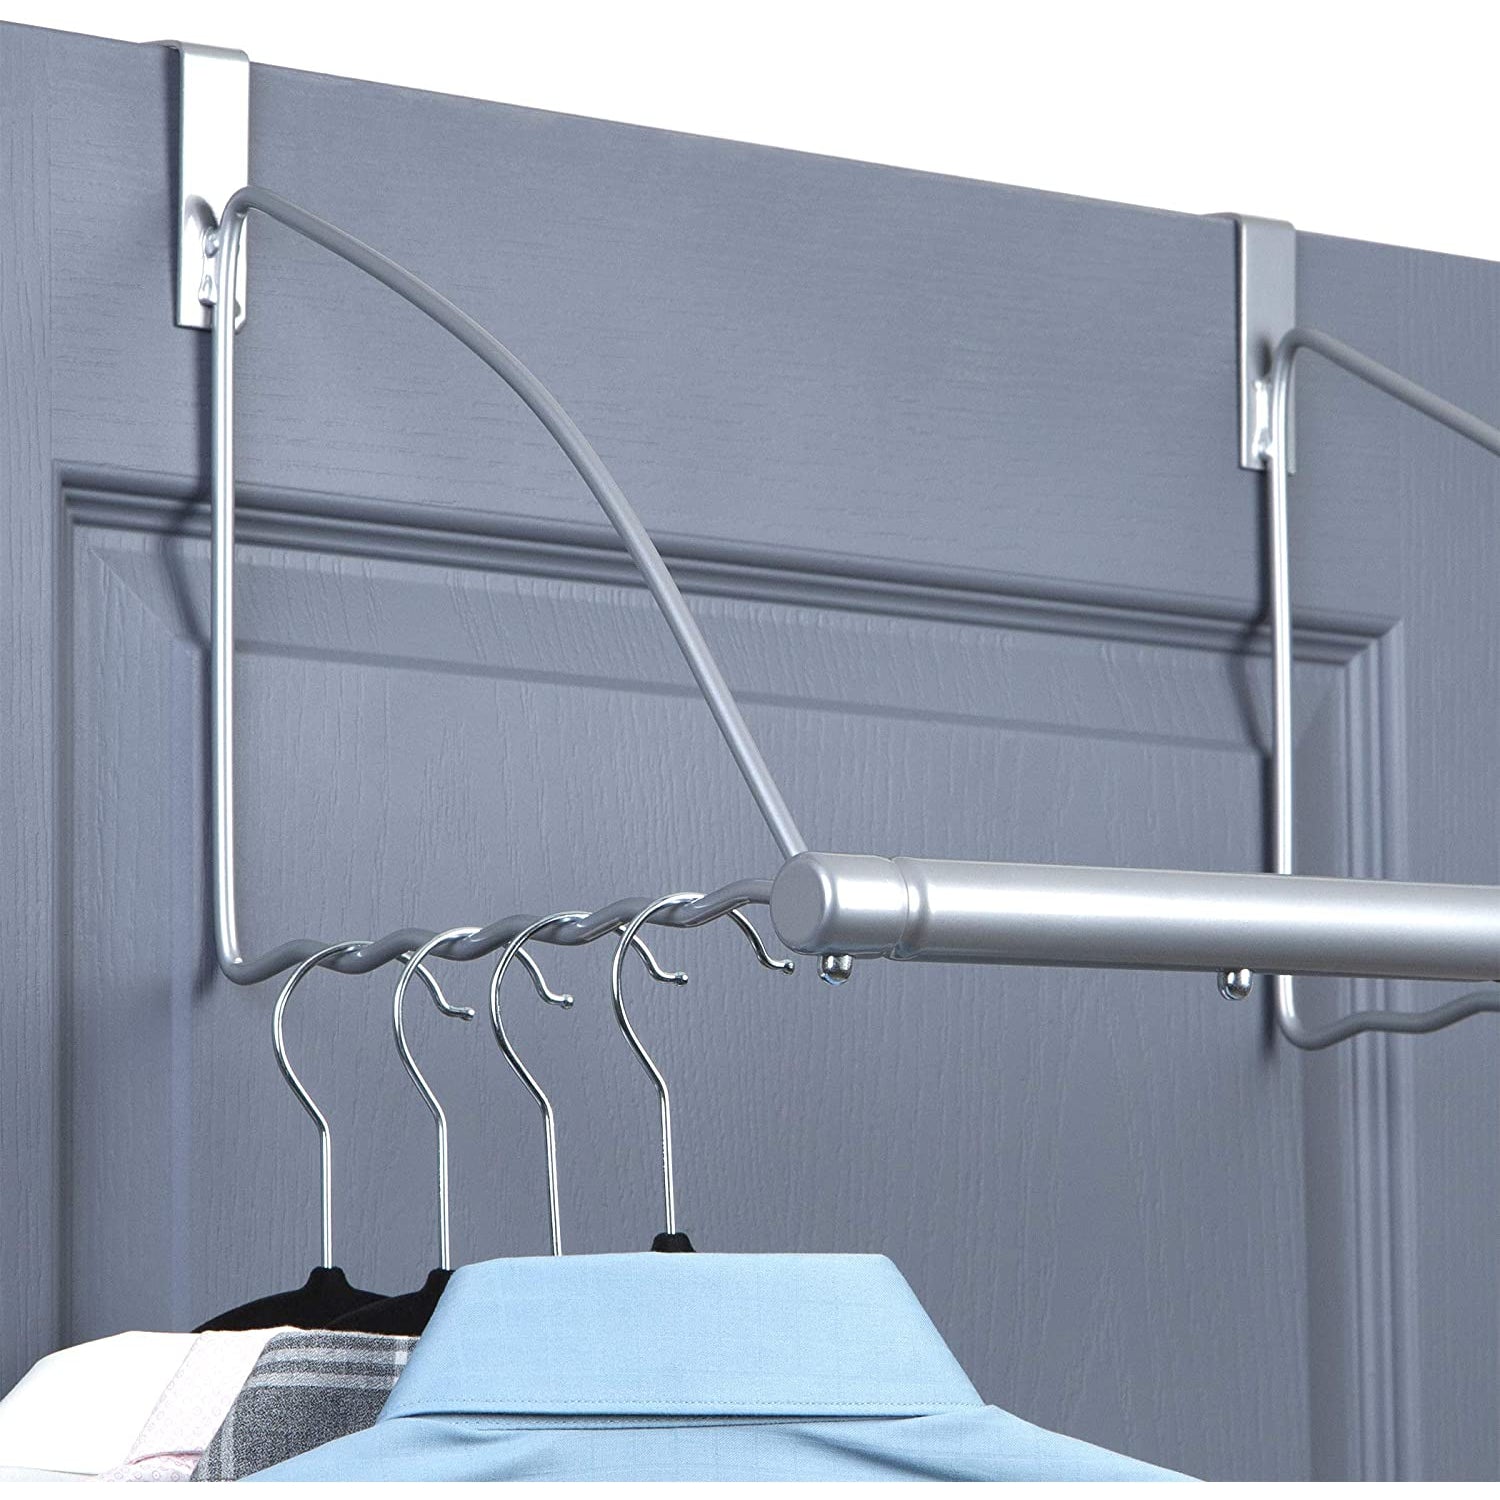 HOLDN’ STORAGE Over the Door Hooks - Door Rack Hangers for Clothes - Bathroom Over Door Hooks for Hanging clothes- Over the Door Clothes Drying Rack.